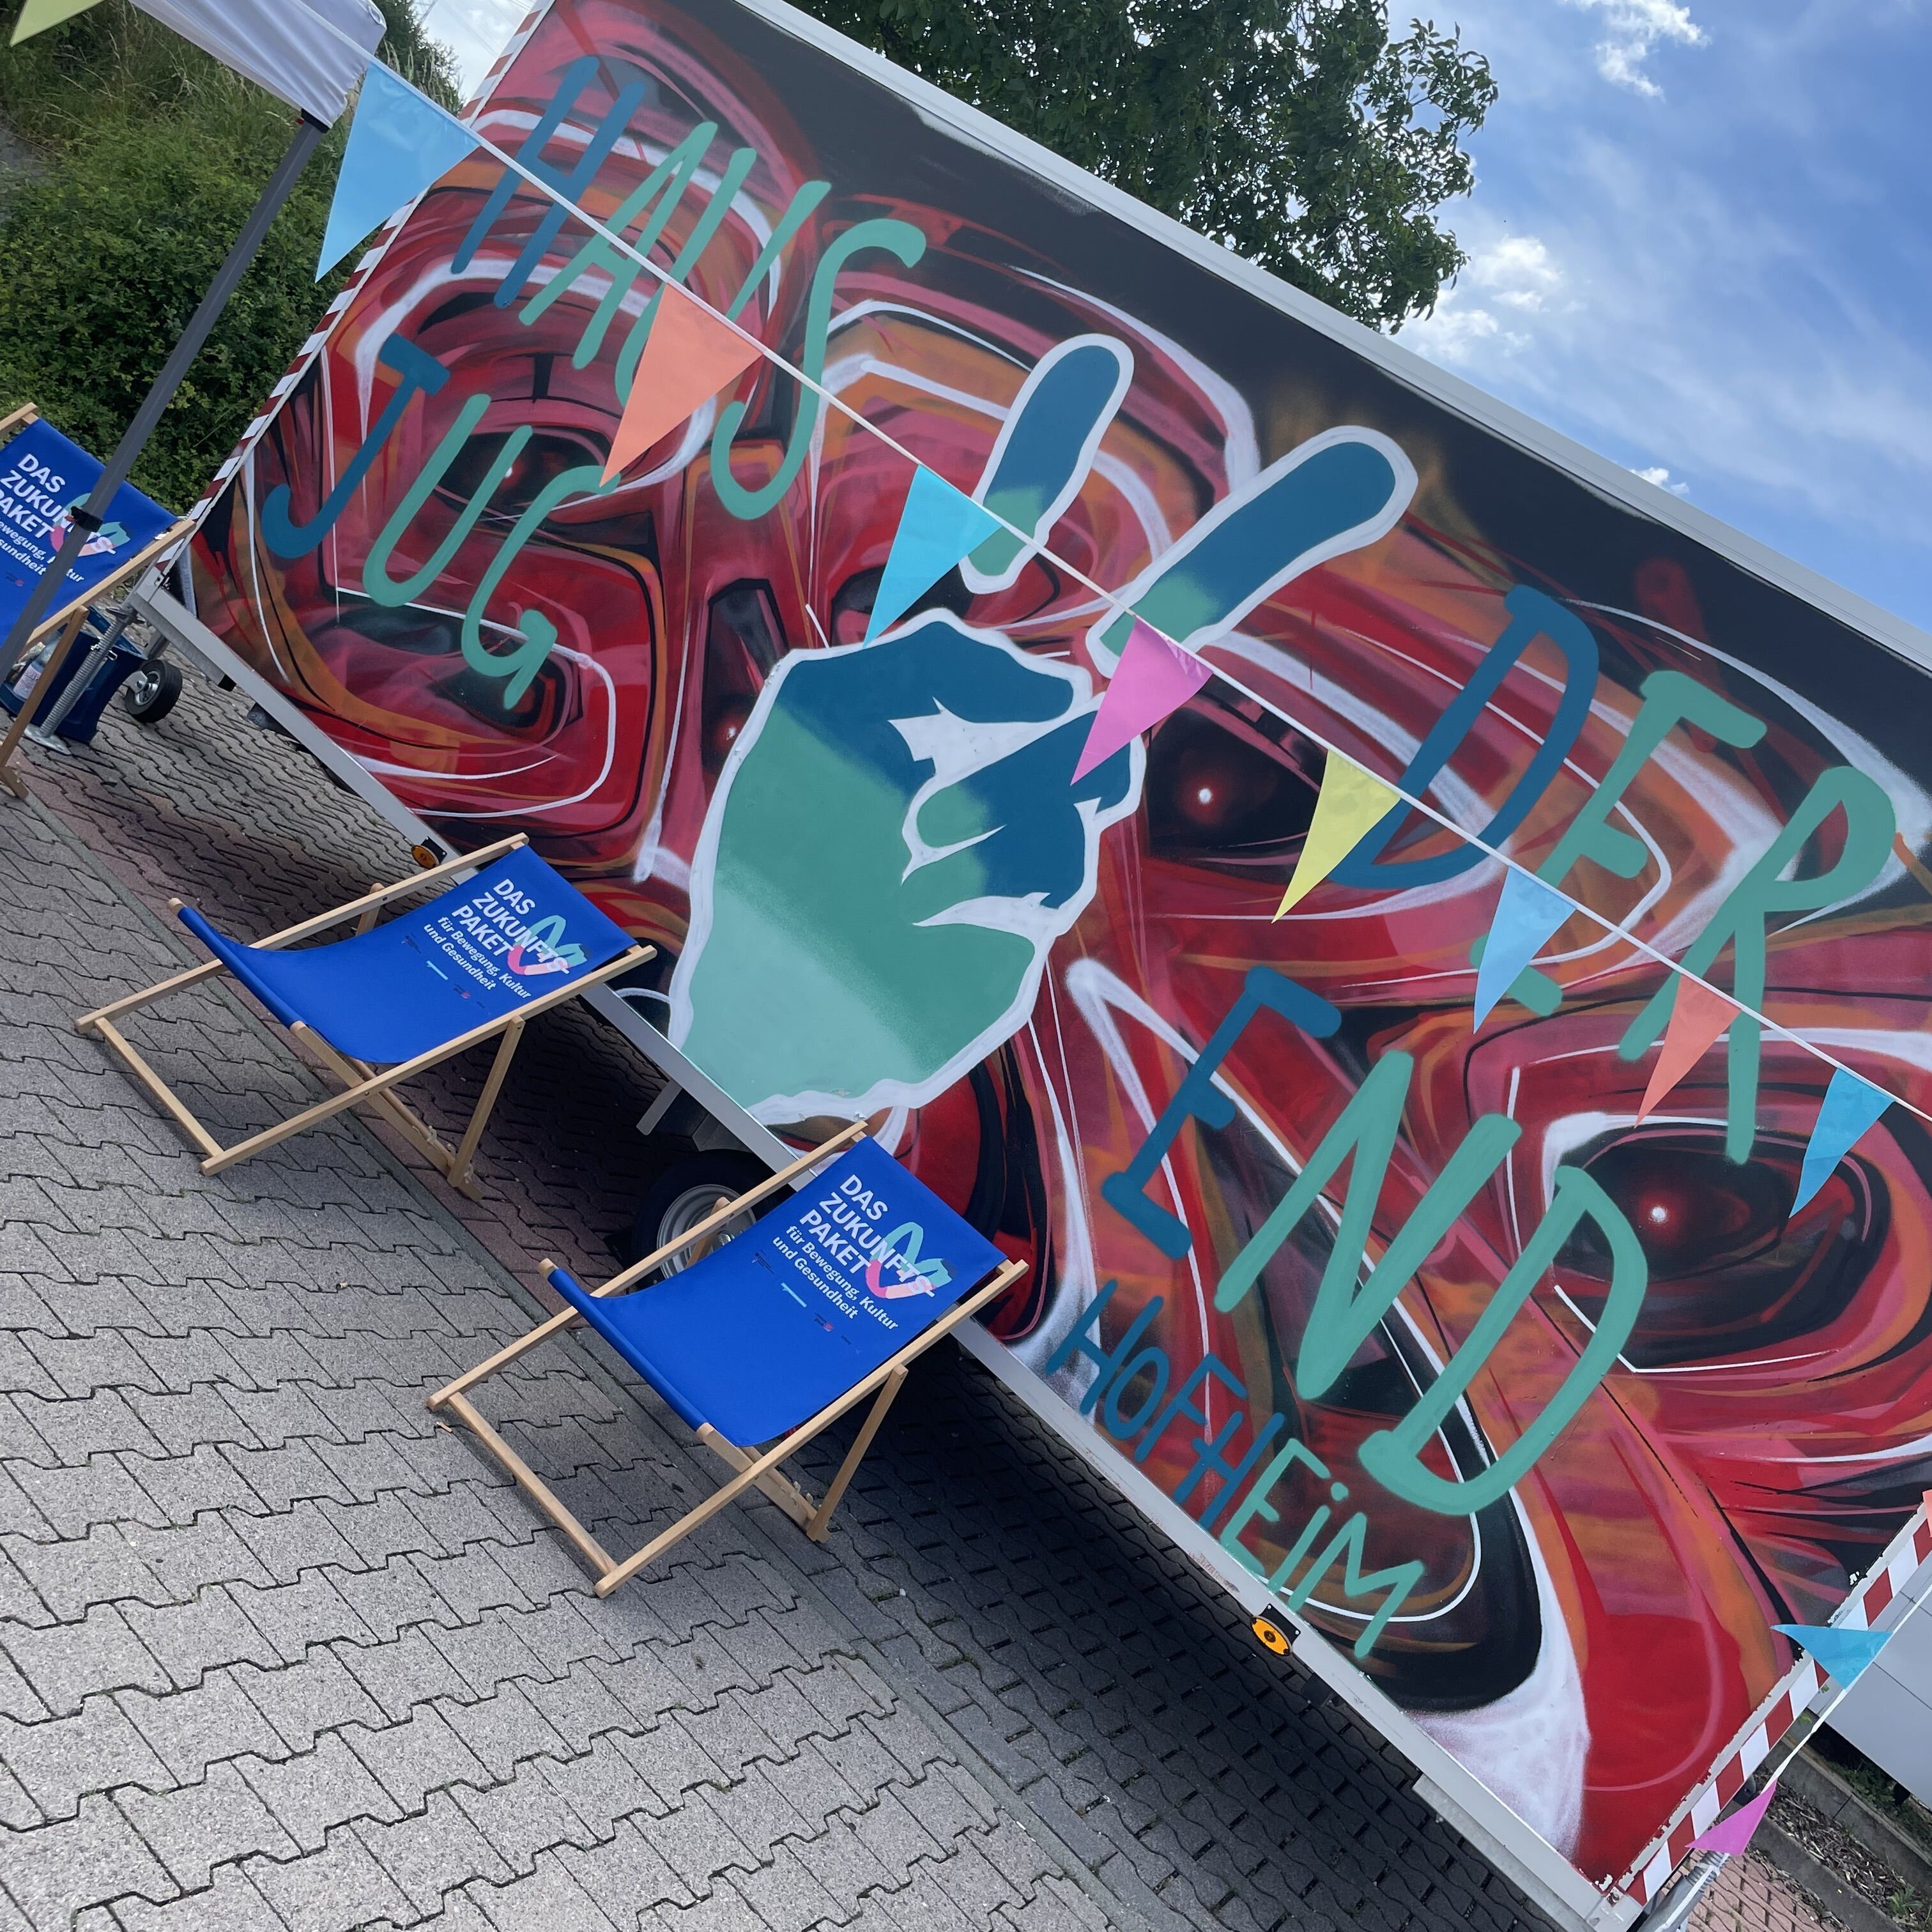 Der zum Jugendtreff umgestaltete Graffiti-Bauwagen